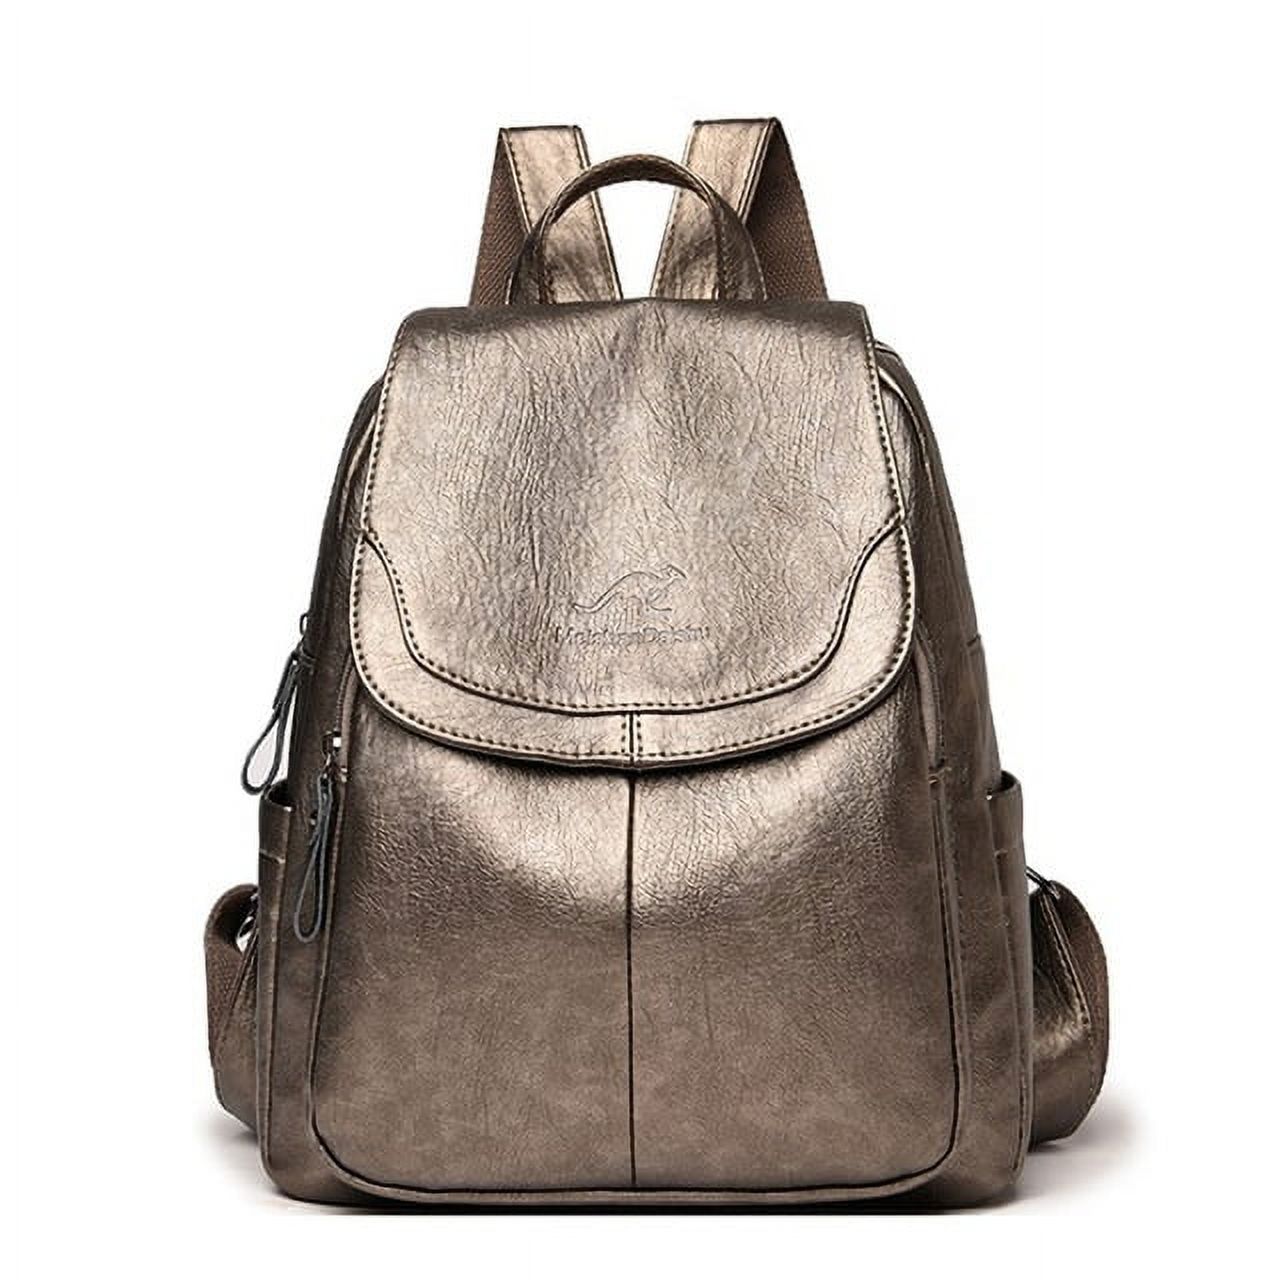 Quarryus Women Large Capacity Backpack Purses Leather Female Vintage ...